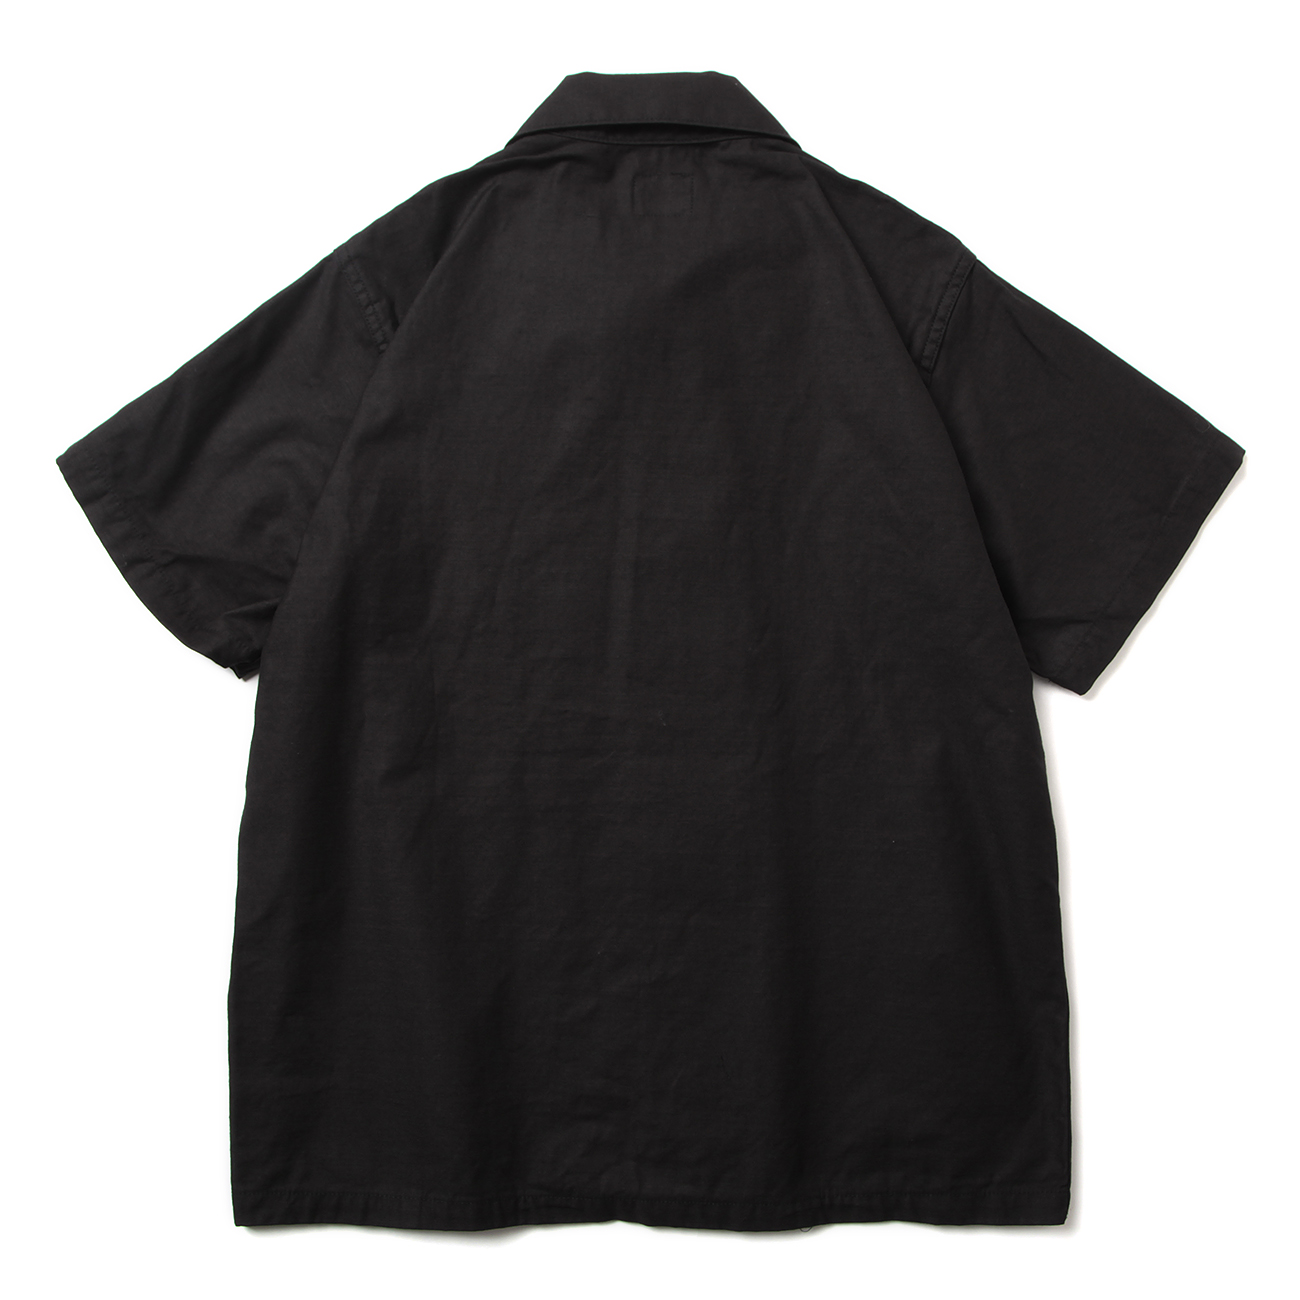 S/S Fatigue Shirt - Backsateen - Black 背面